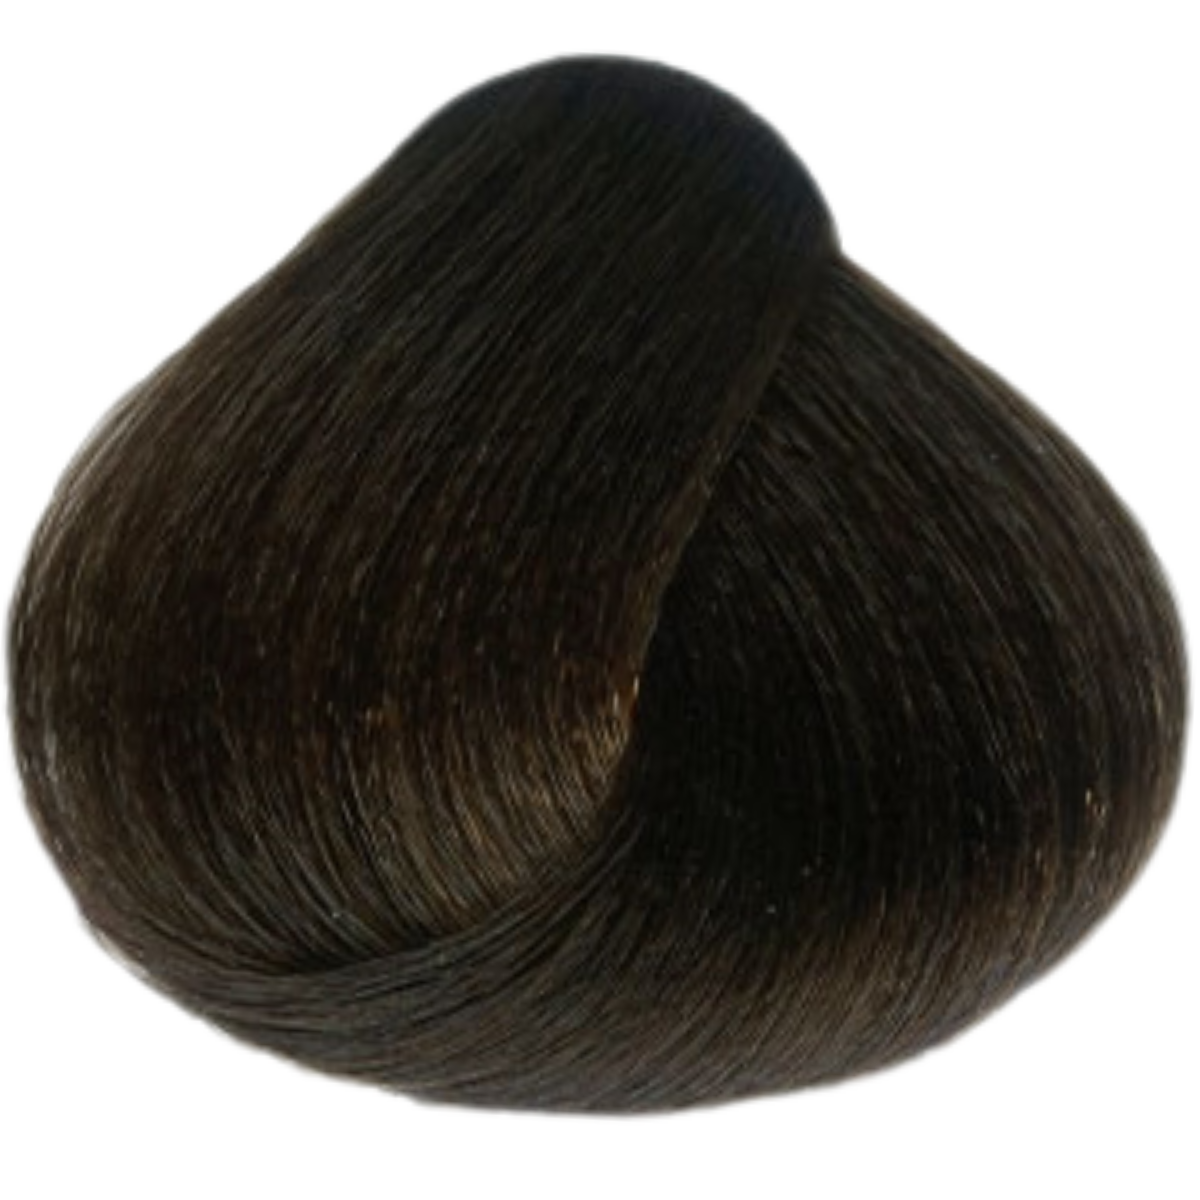 צבע שיער 4.52 CHOCOLATE MAHOGANY BROWN פארמויטה FarmaVita צבע לשיער 60 גרם